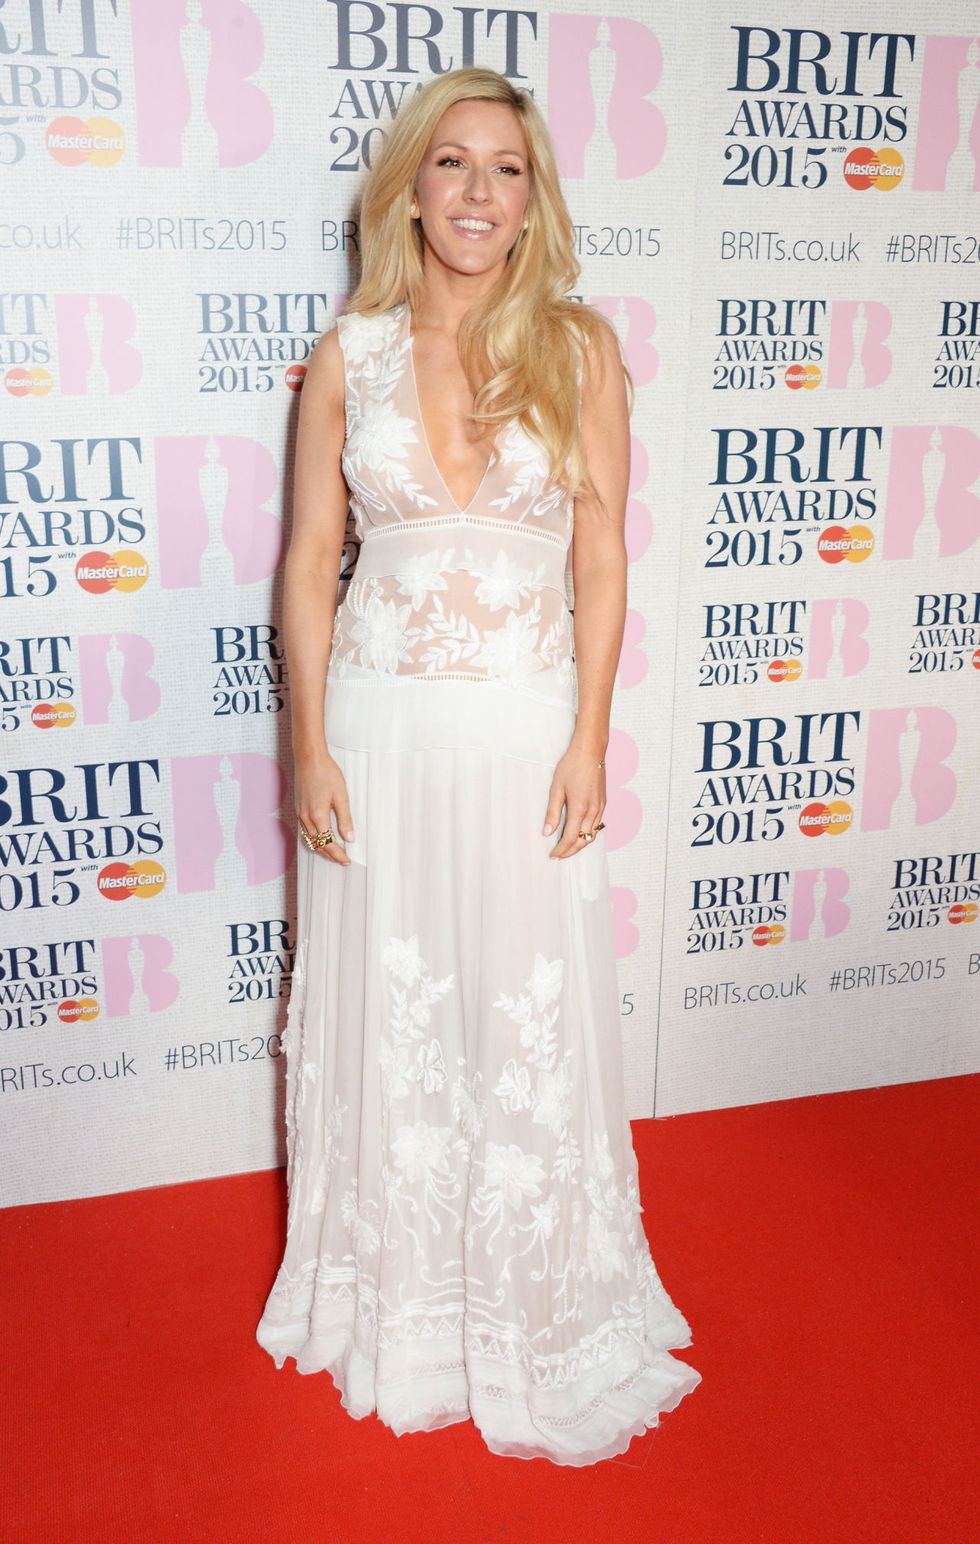 Ellie Goulding at the Brit awards 2015